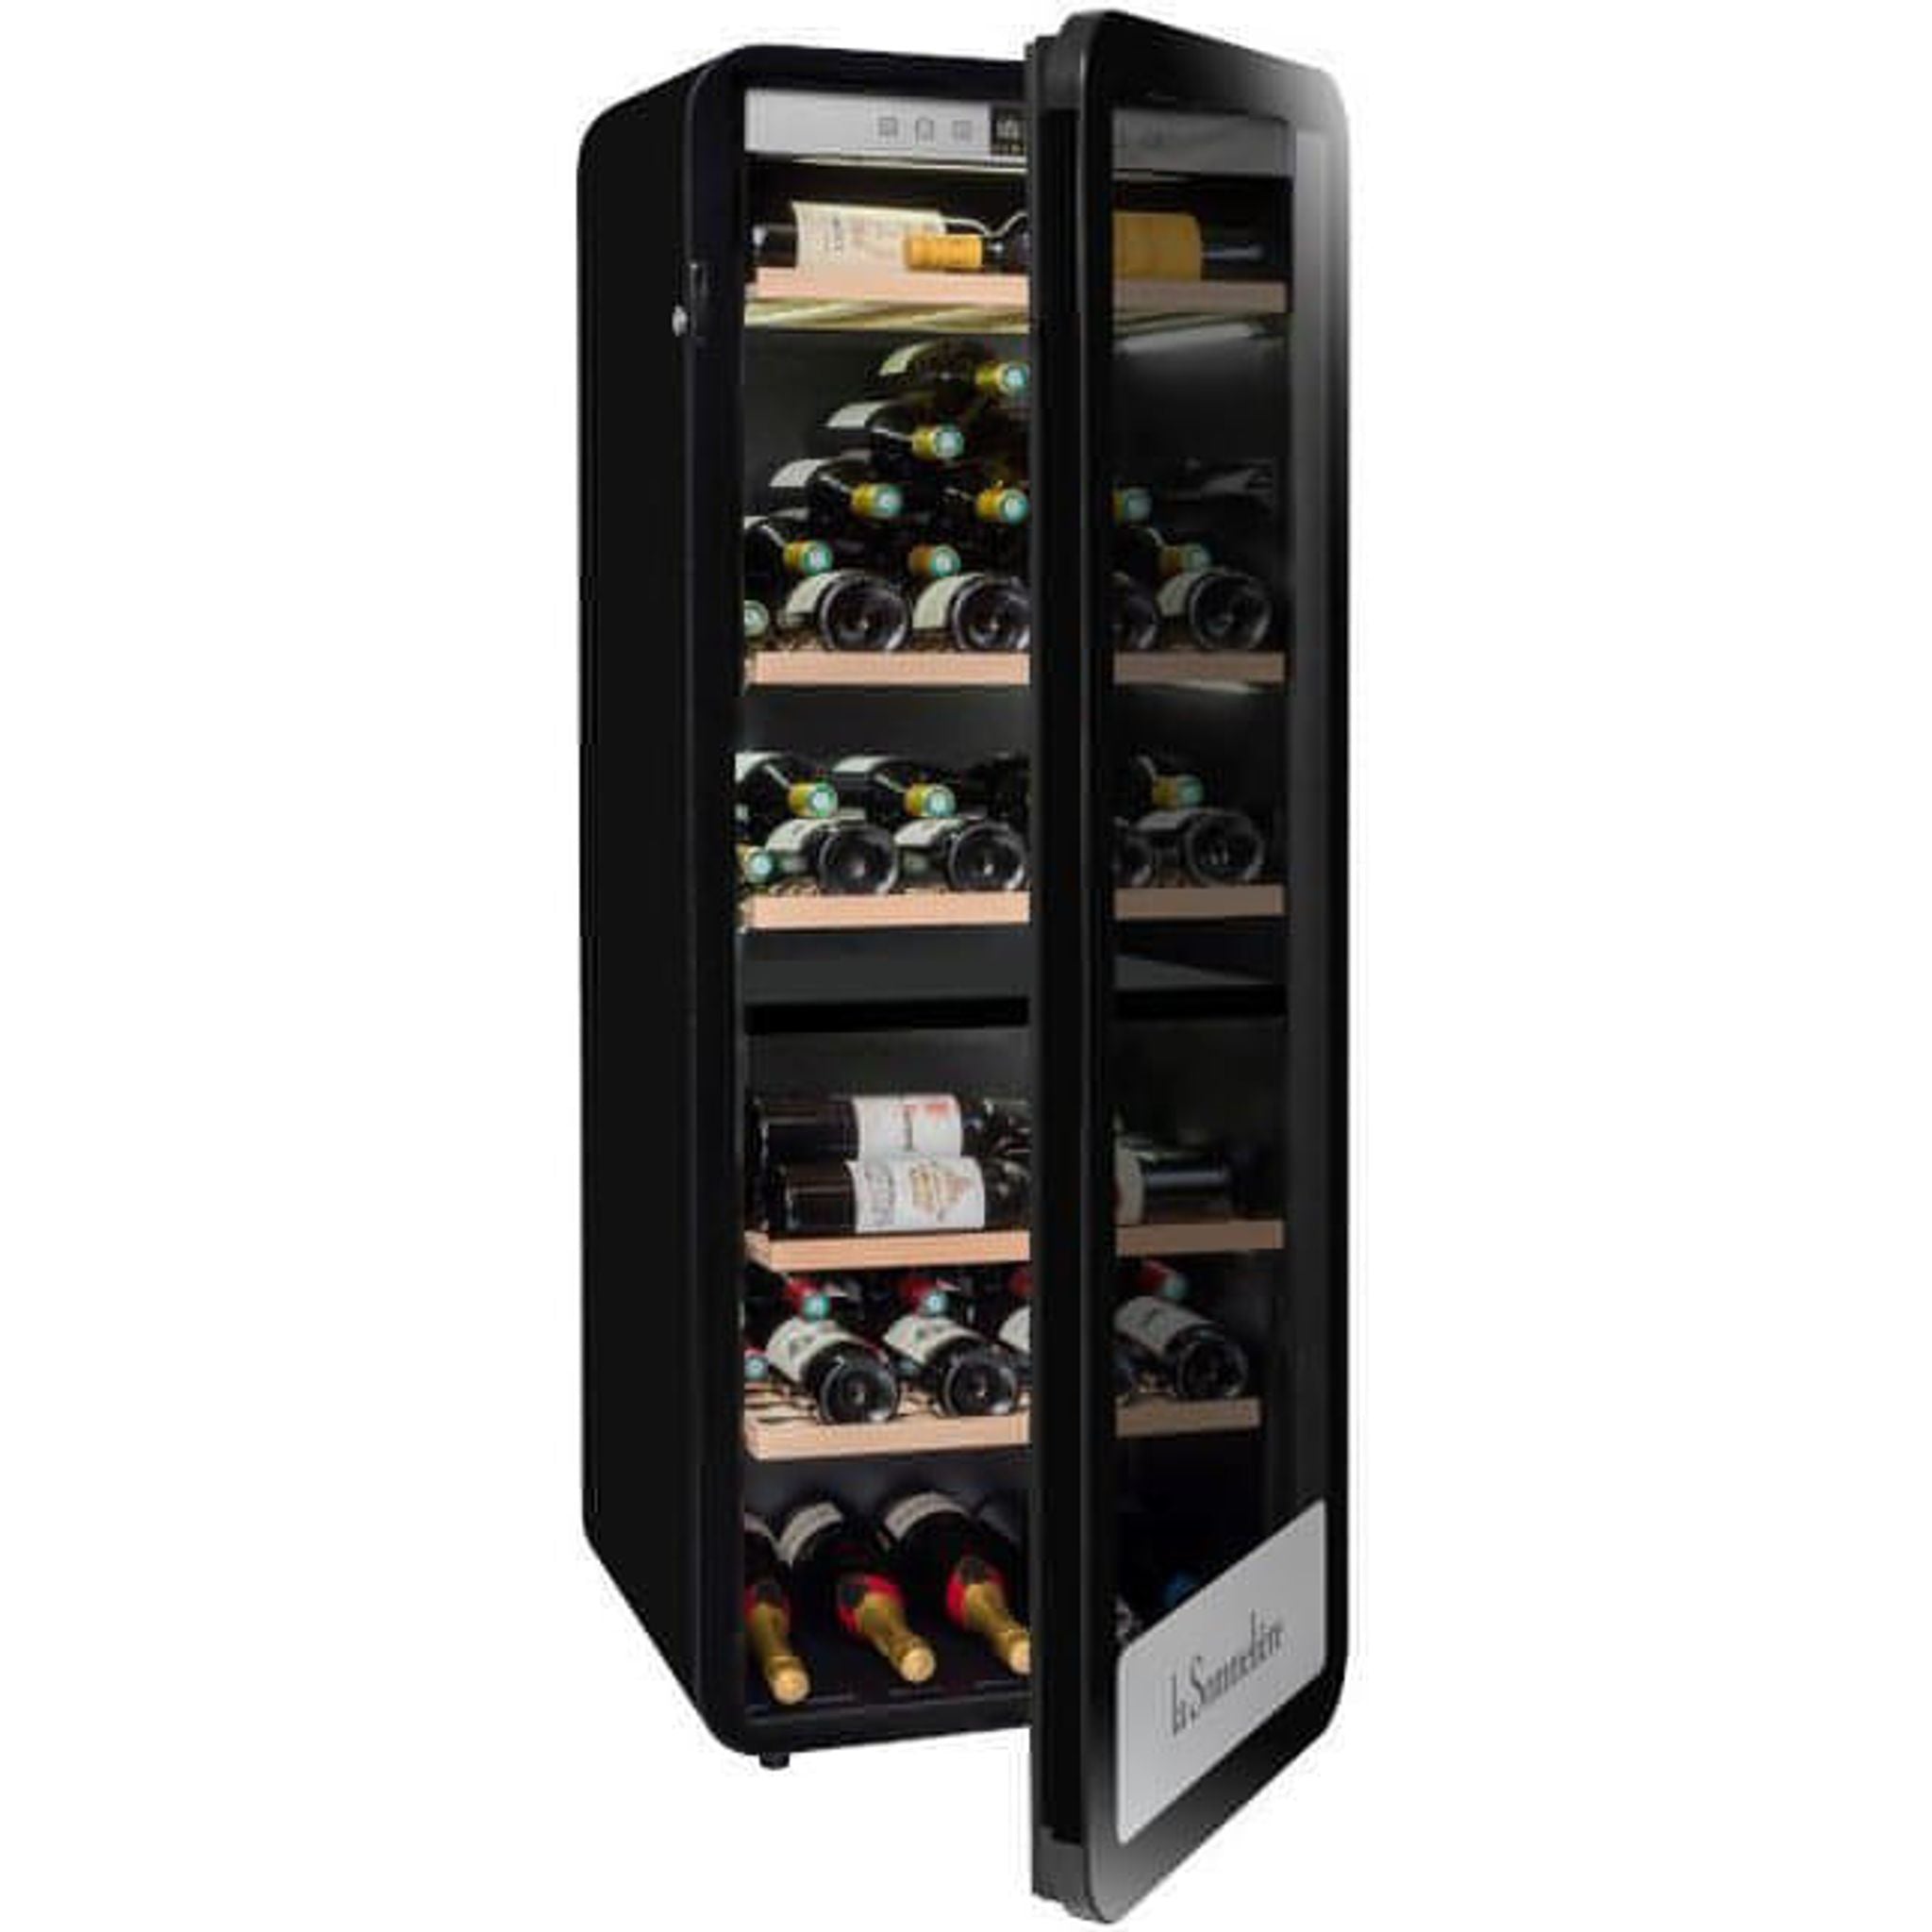 La Sommeliere - 181 Bottle Freestanding Dual Zone Wine Cabinet APOGEE190DZ